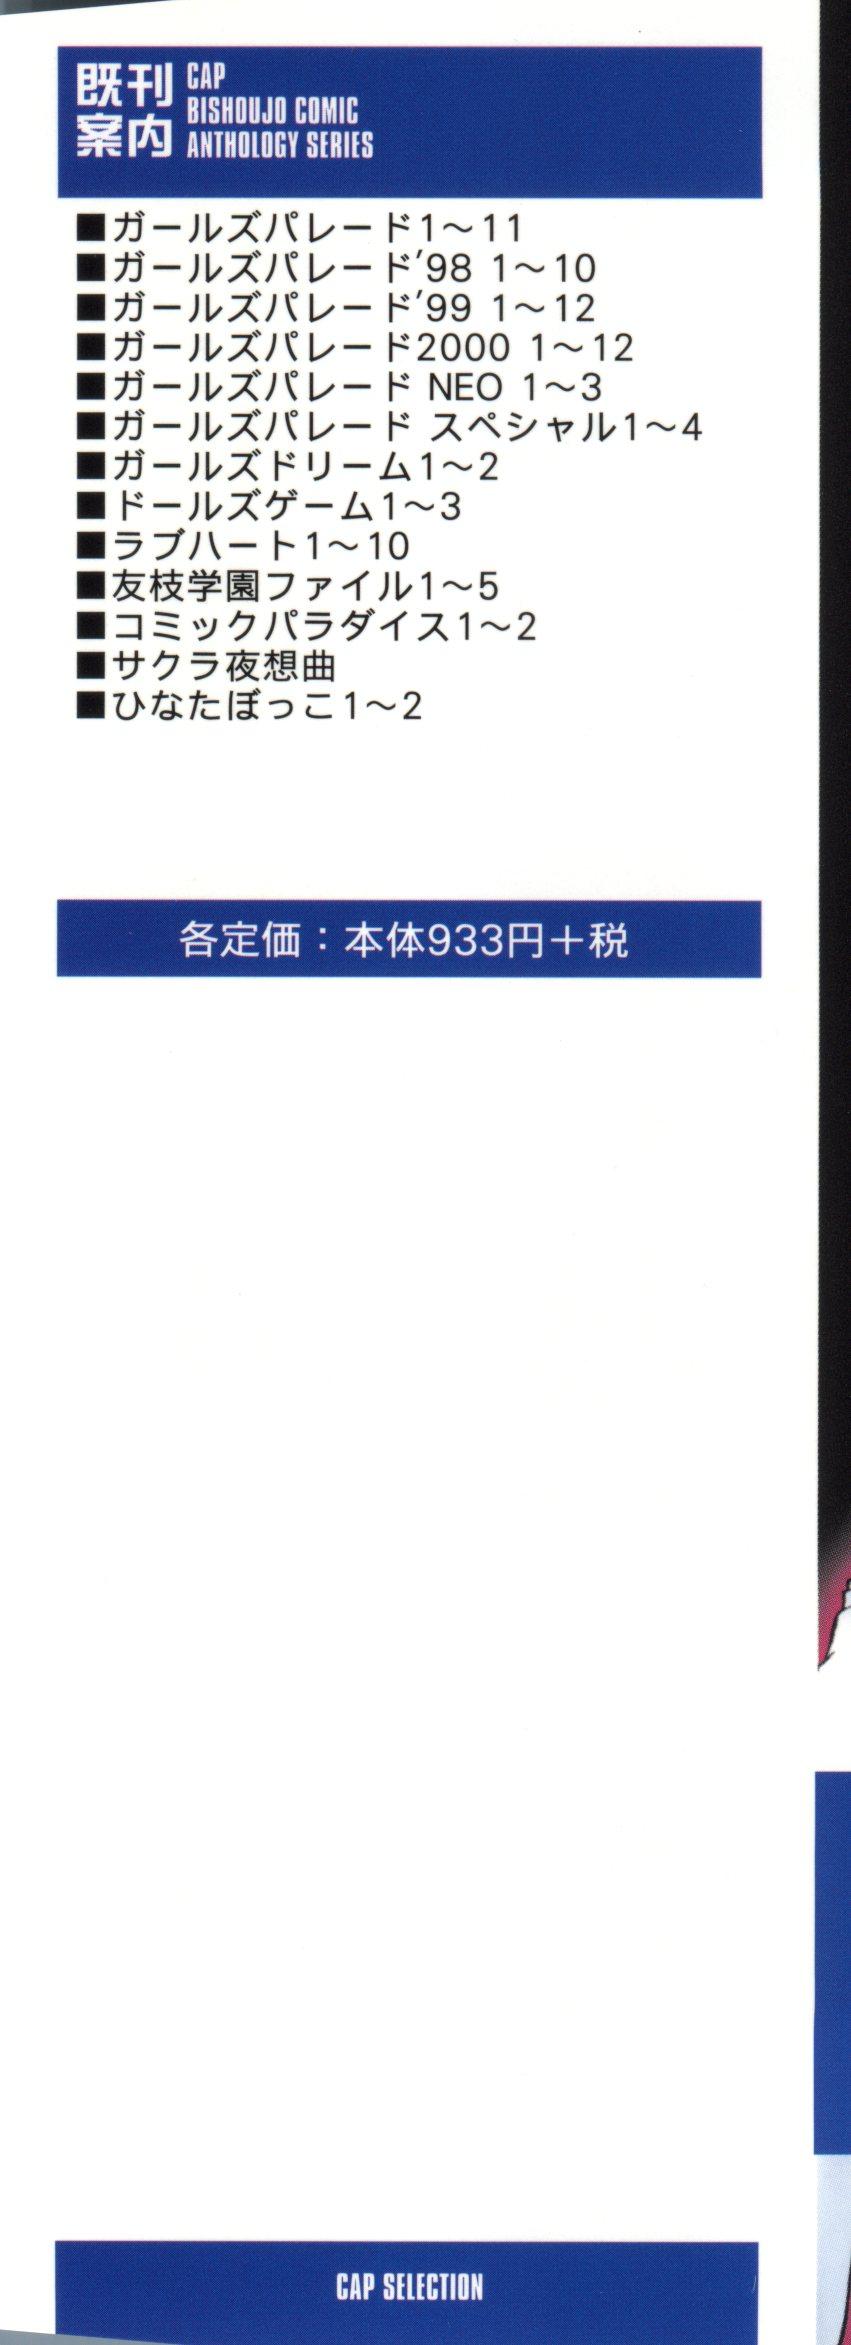 Stepsister Tomoeda Gakuen File 5 - Cardcaptor sakura Exibicionismo - Page 3